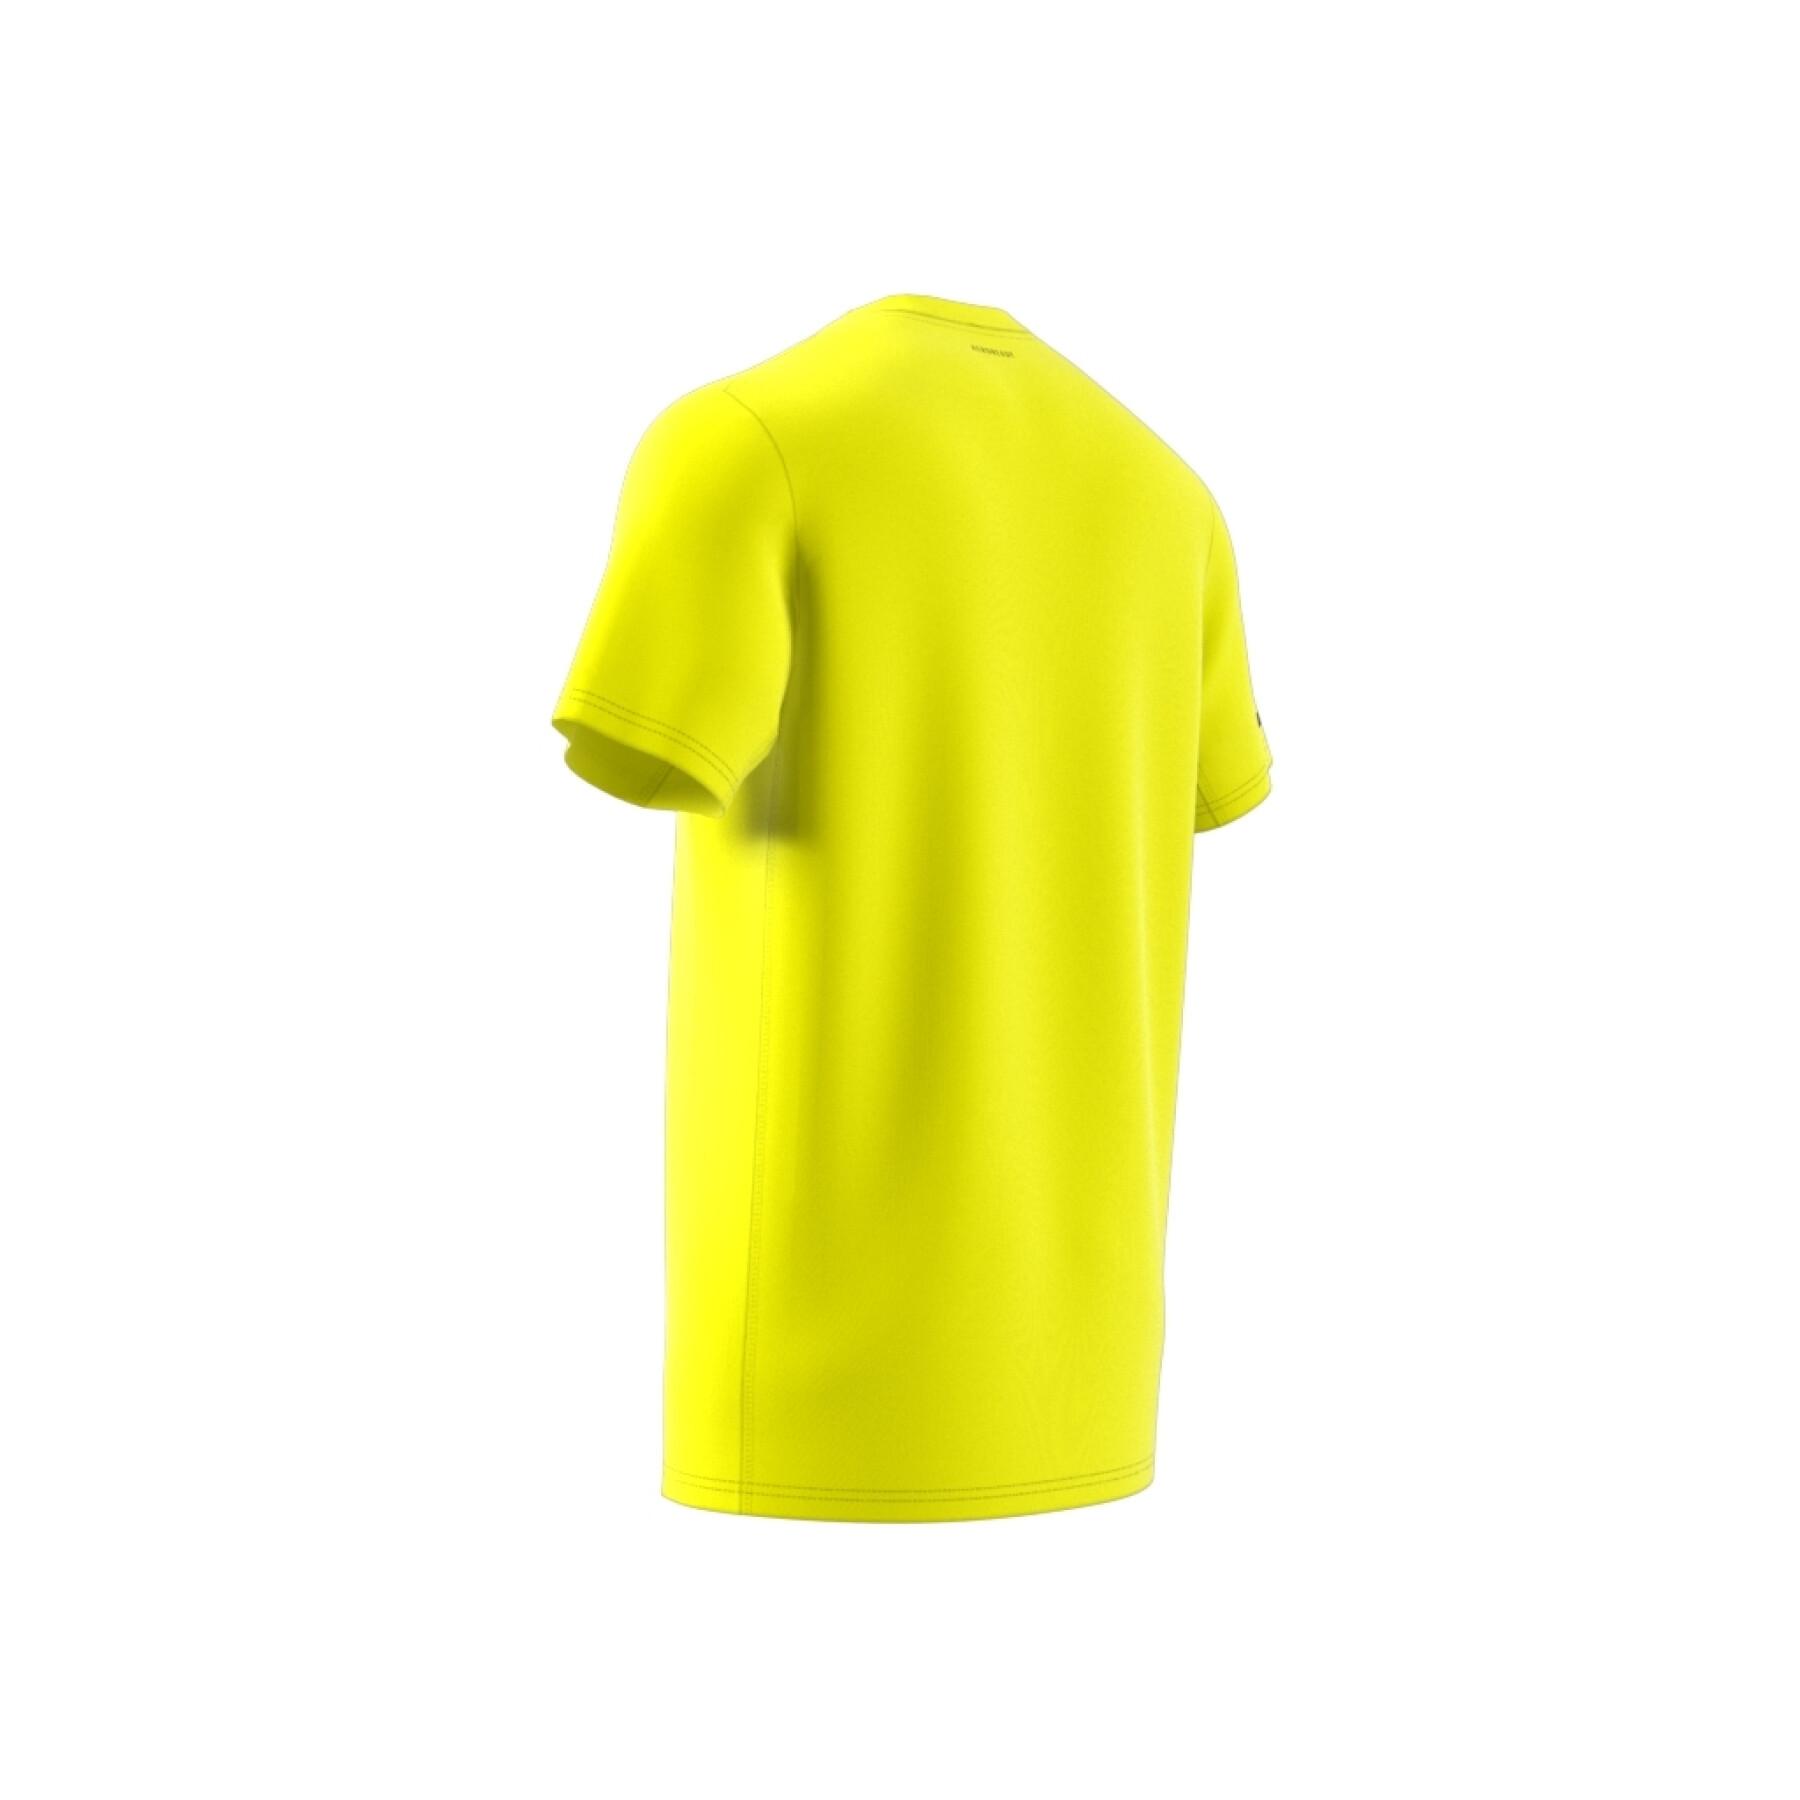 Koszulka klubu tenisowego z 3 paskami adidas